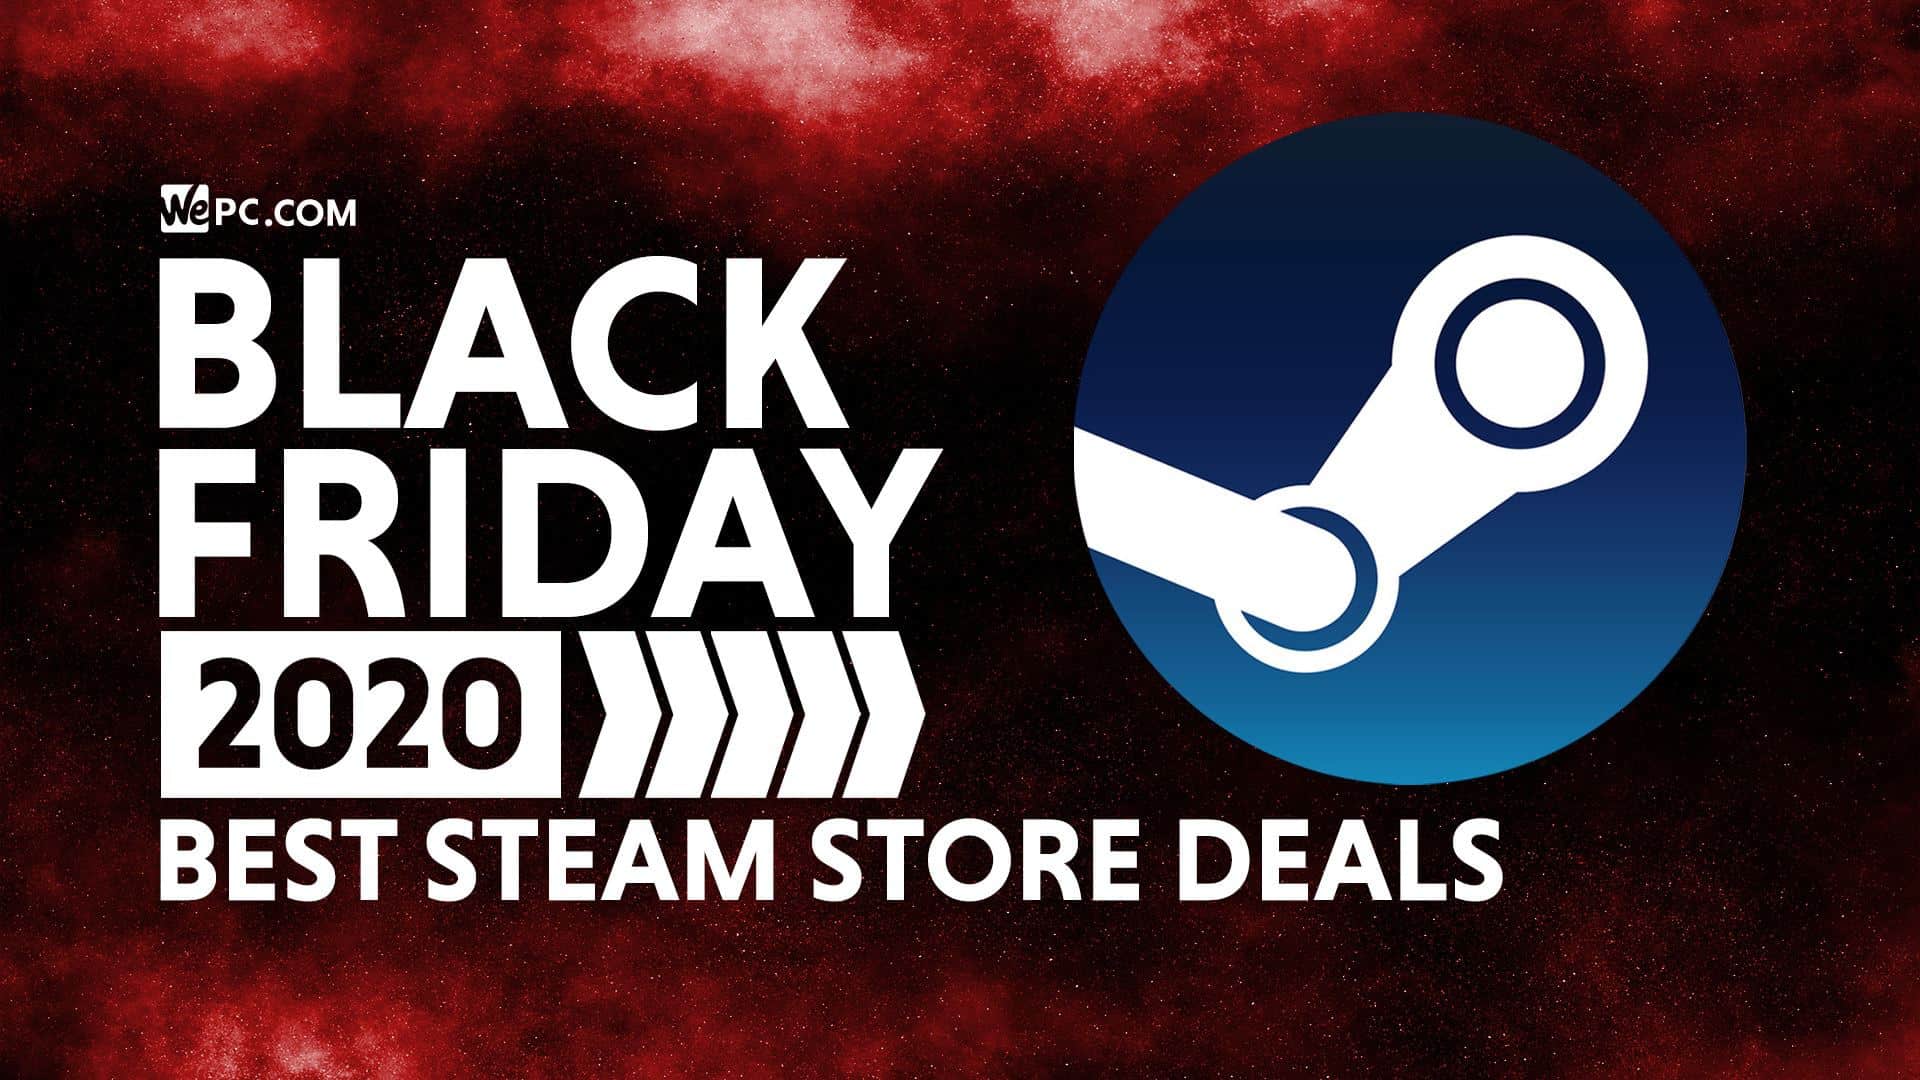 Steam Black Friday Deals 2020 Wepc Deals